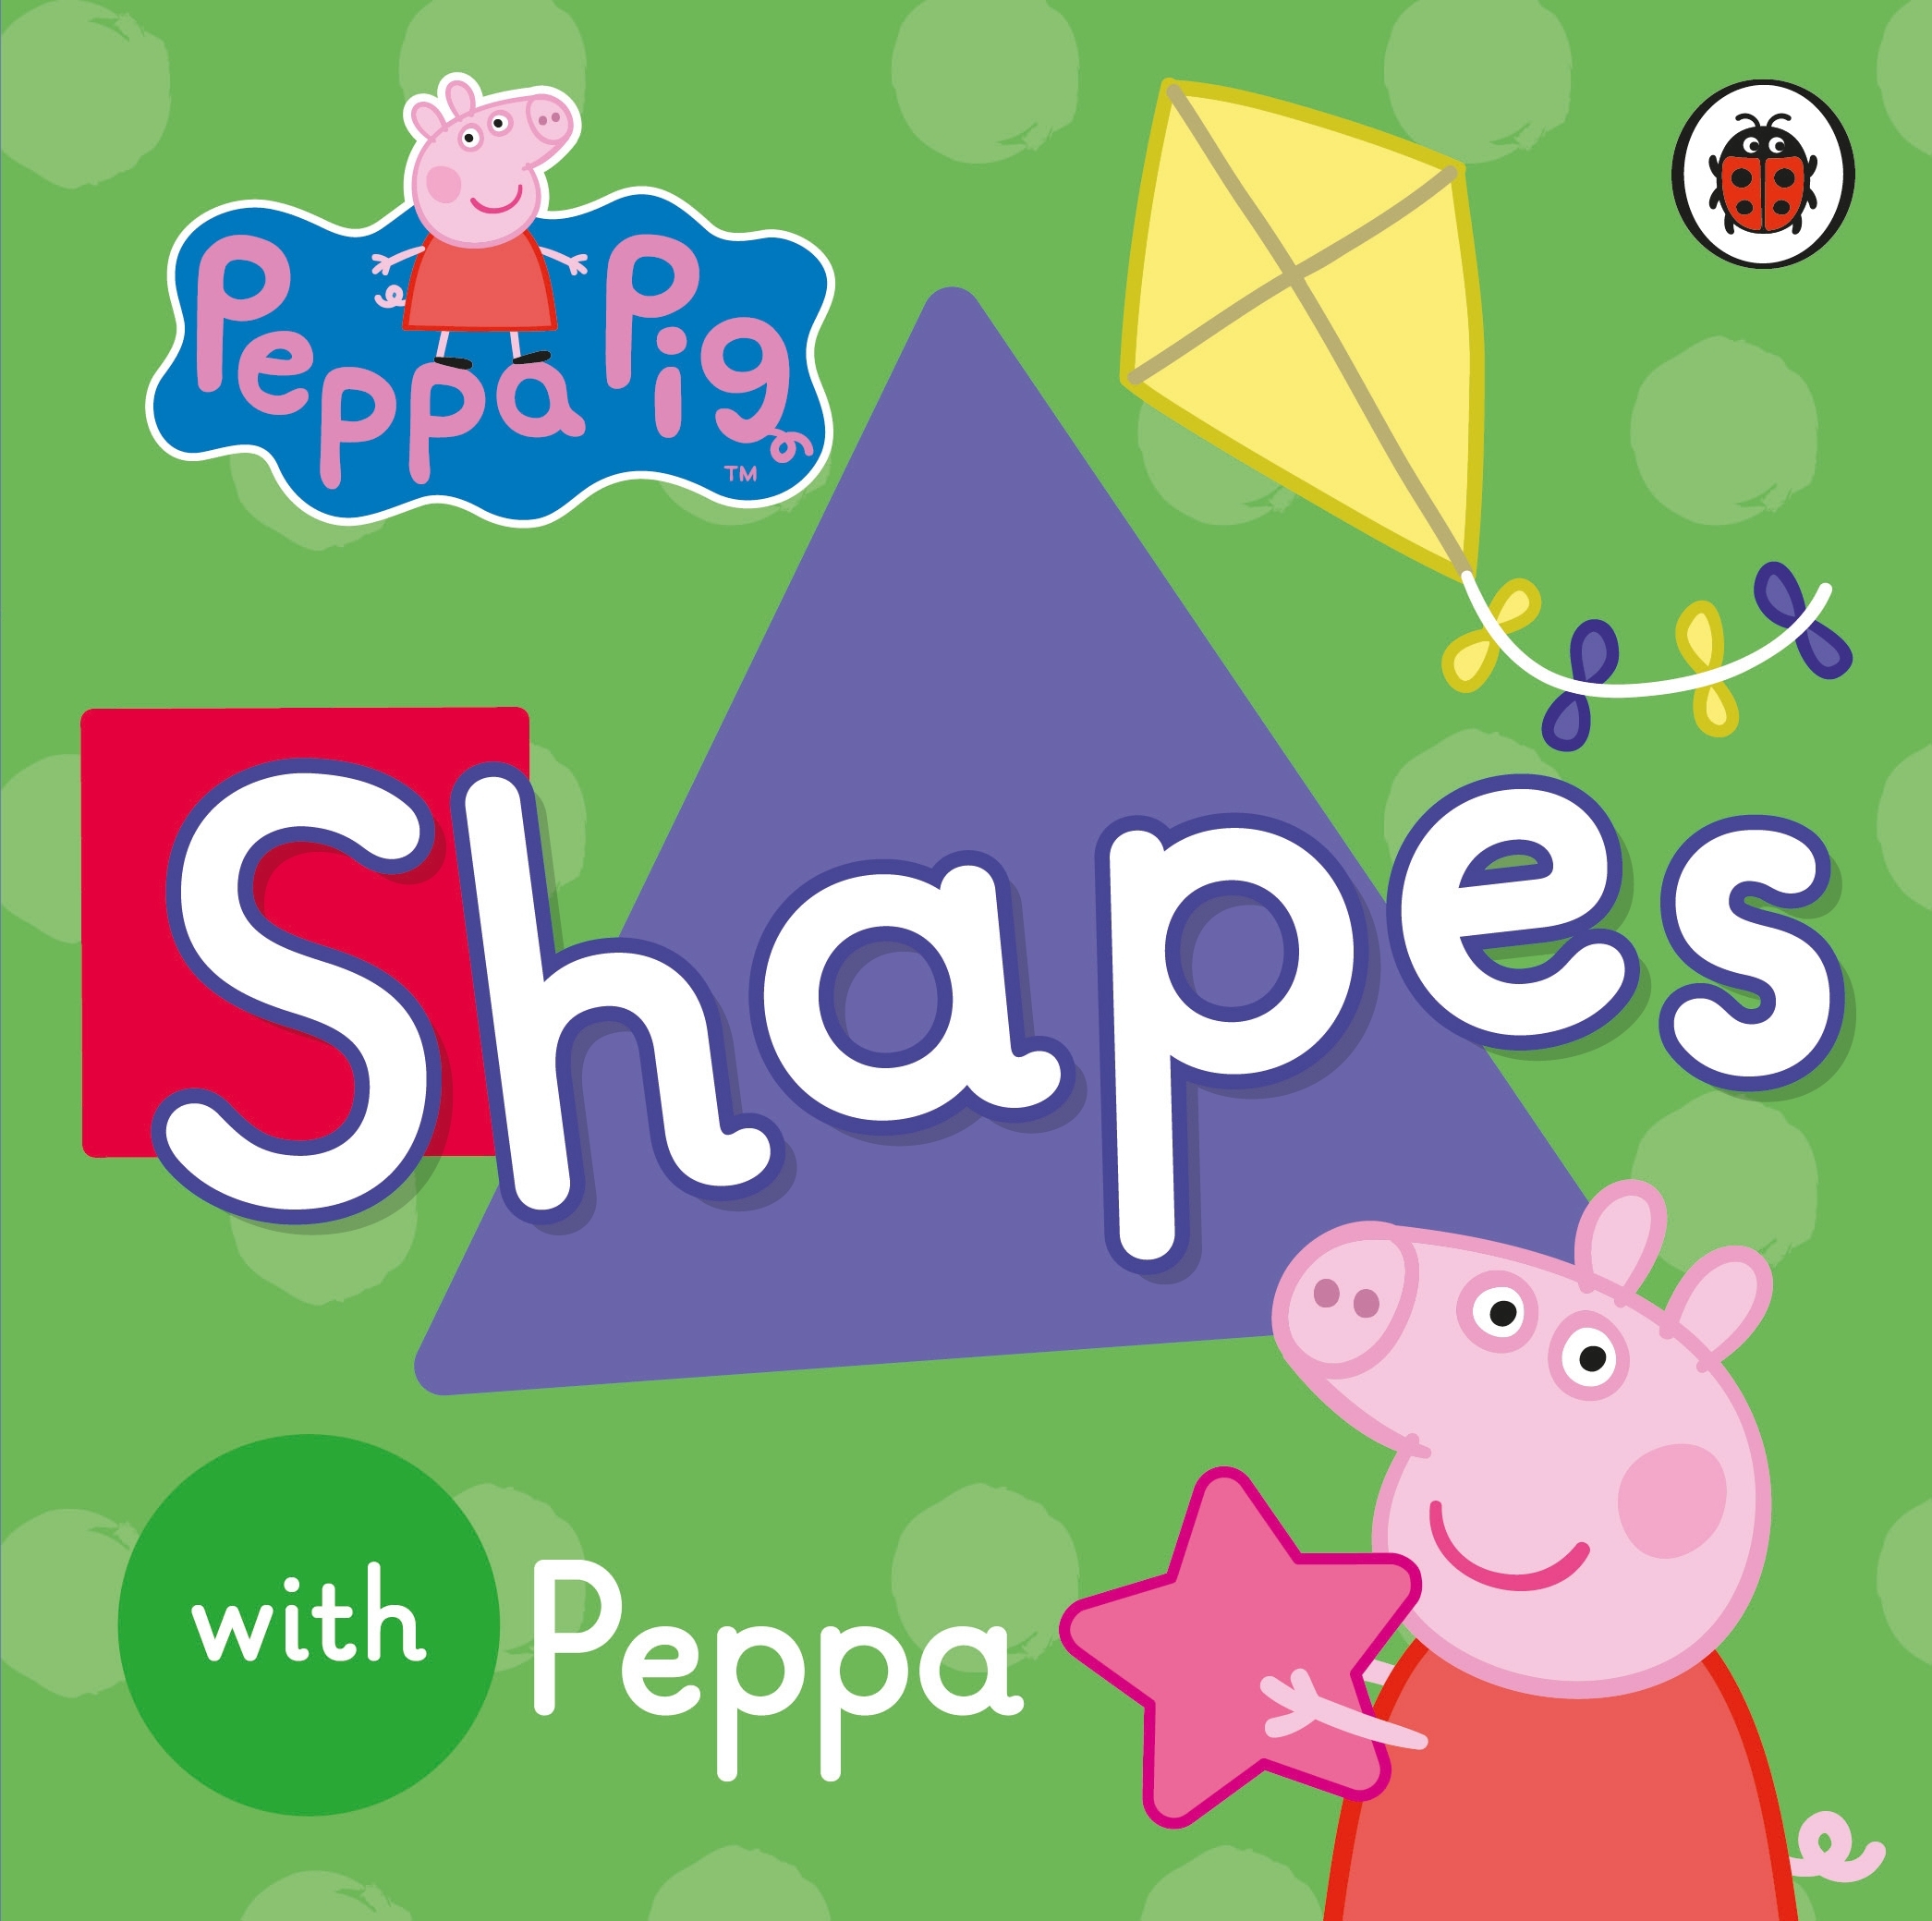 Peppa Pig : Shapes